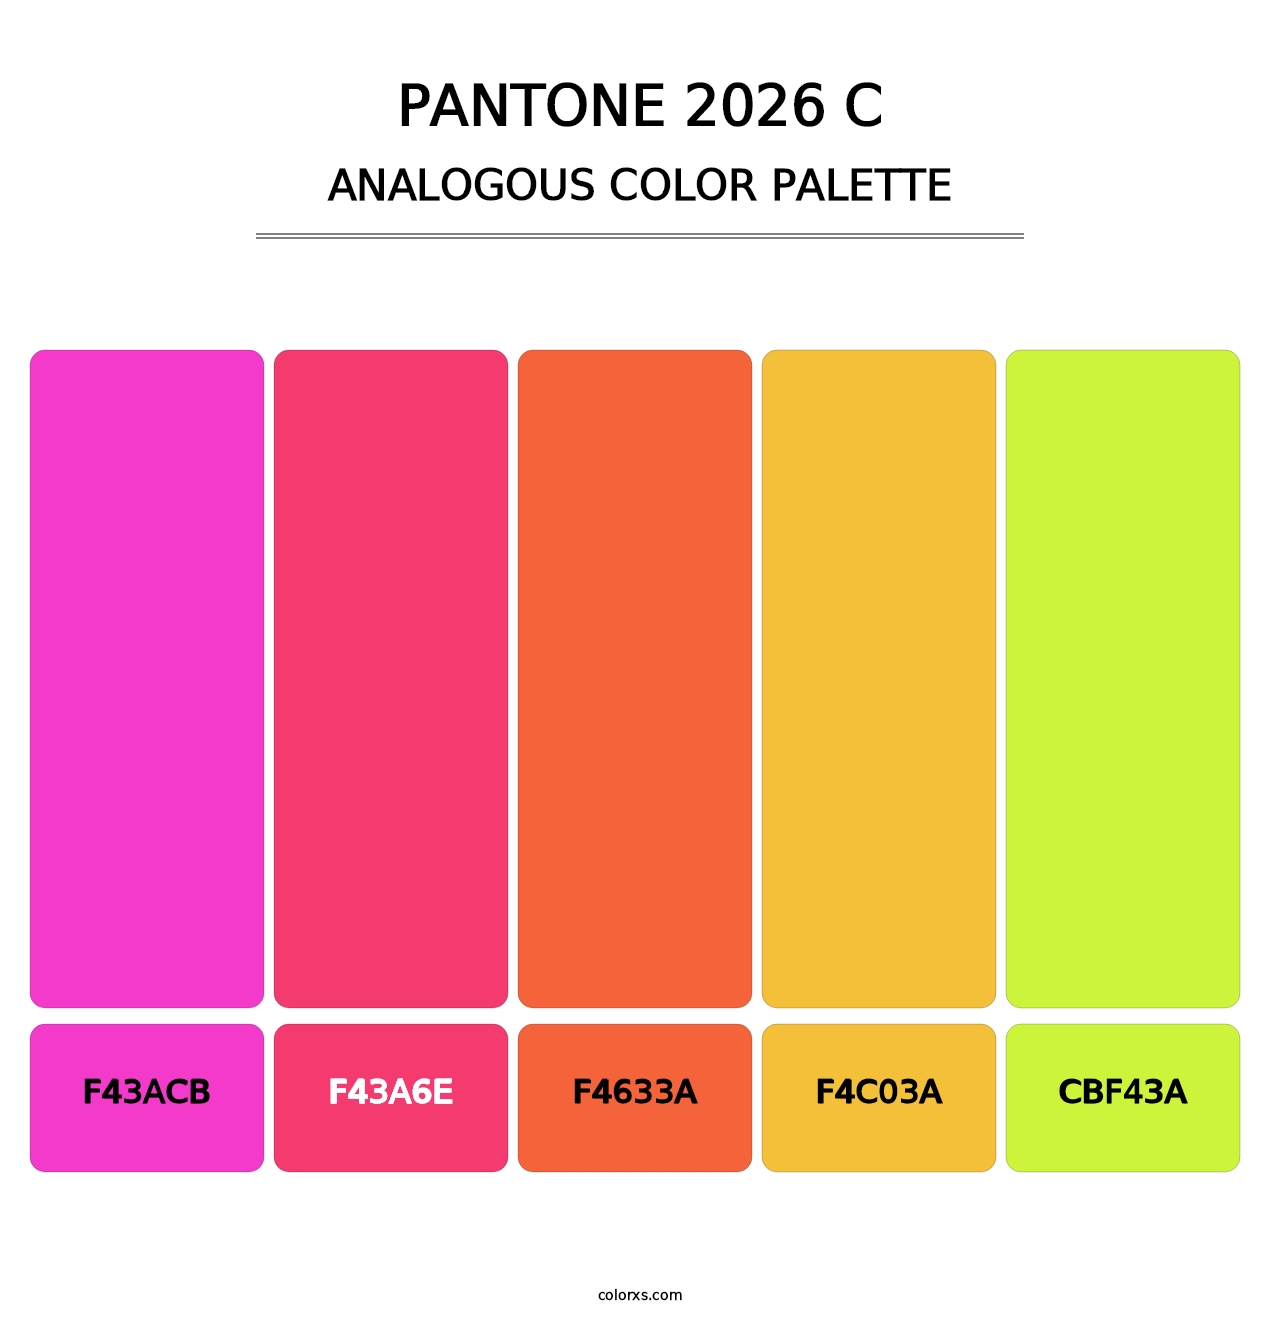 PANTONE 2026 C - Analogous Color Palette